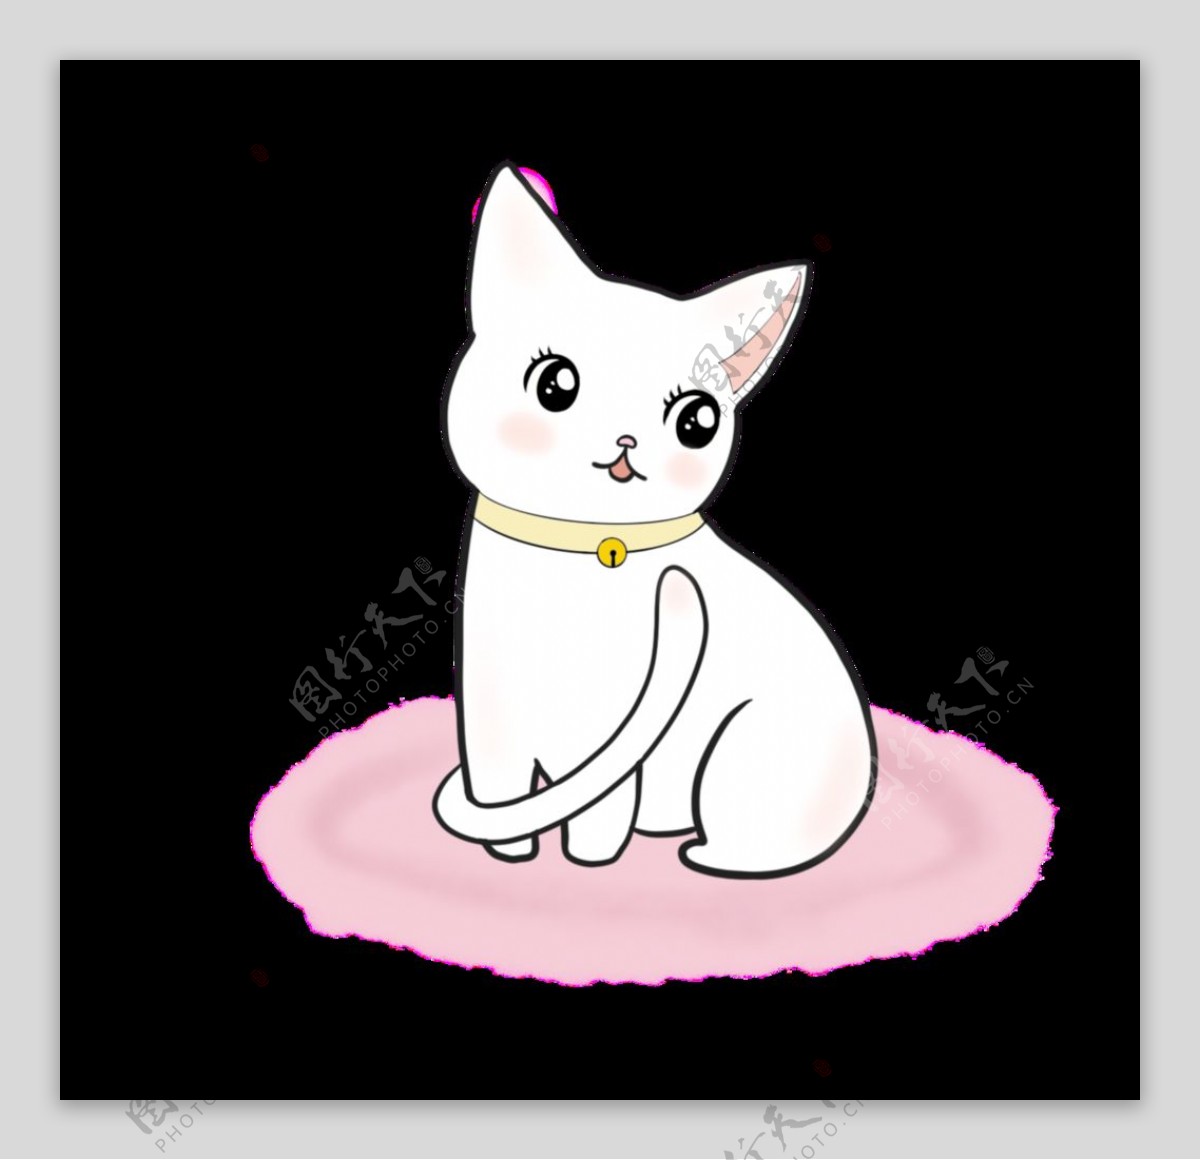 粉色地毯上的白色小猫图片